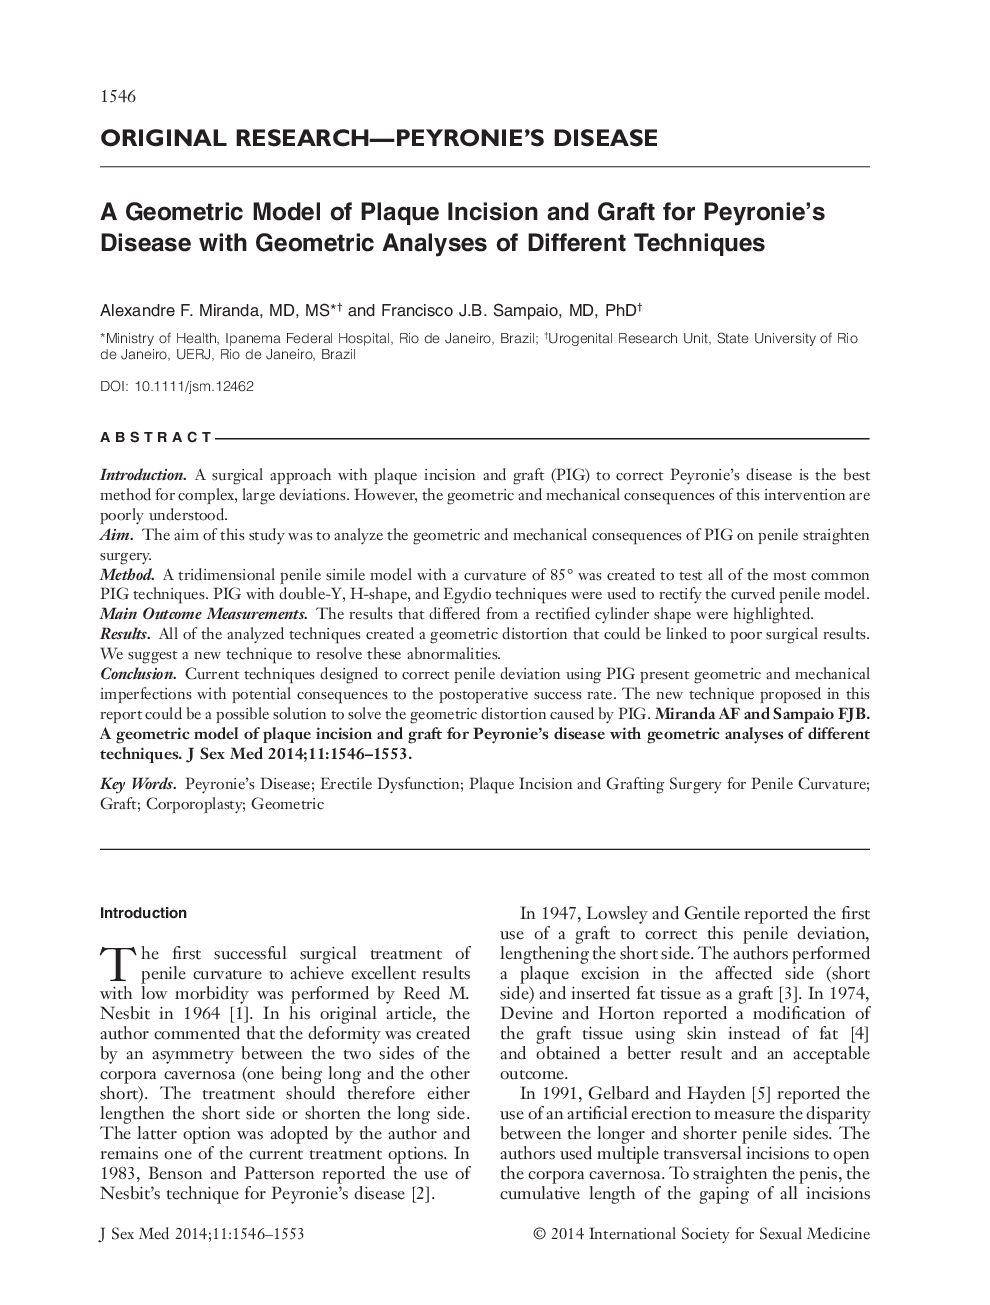 یک مدل هندسی برش پلاک و پیوند برای بیماری پایرونی با تحلیل هندسی روش های مختلف 